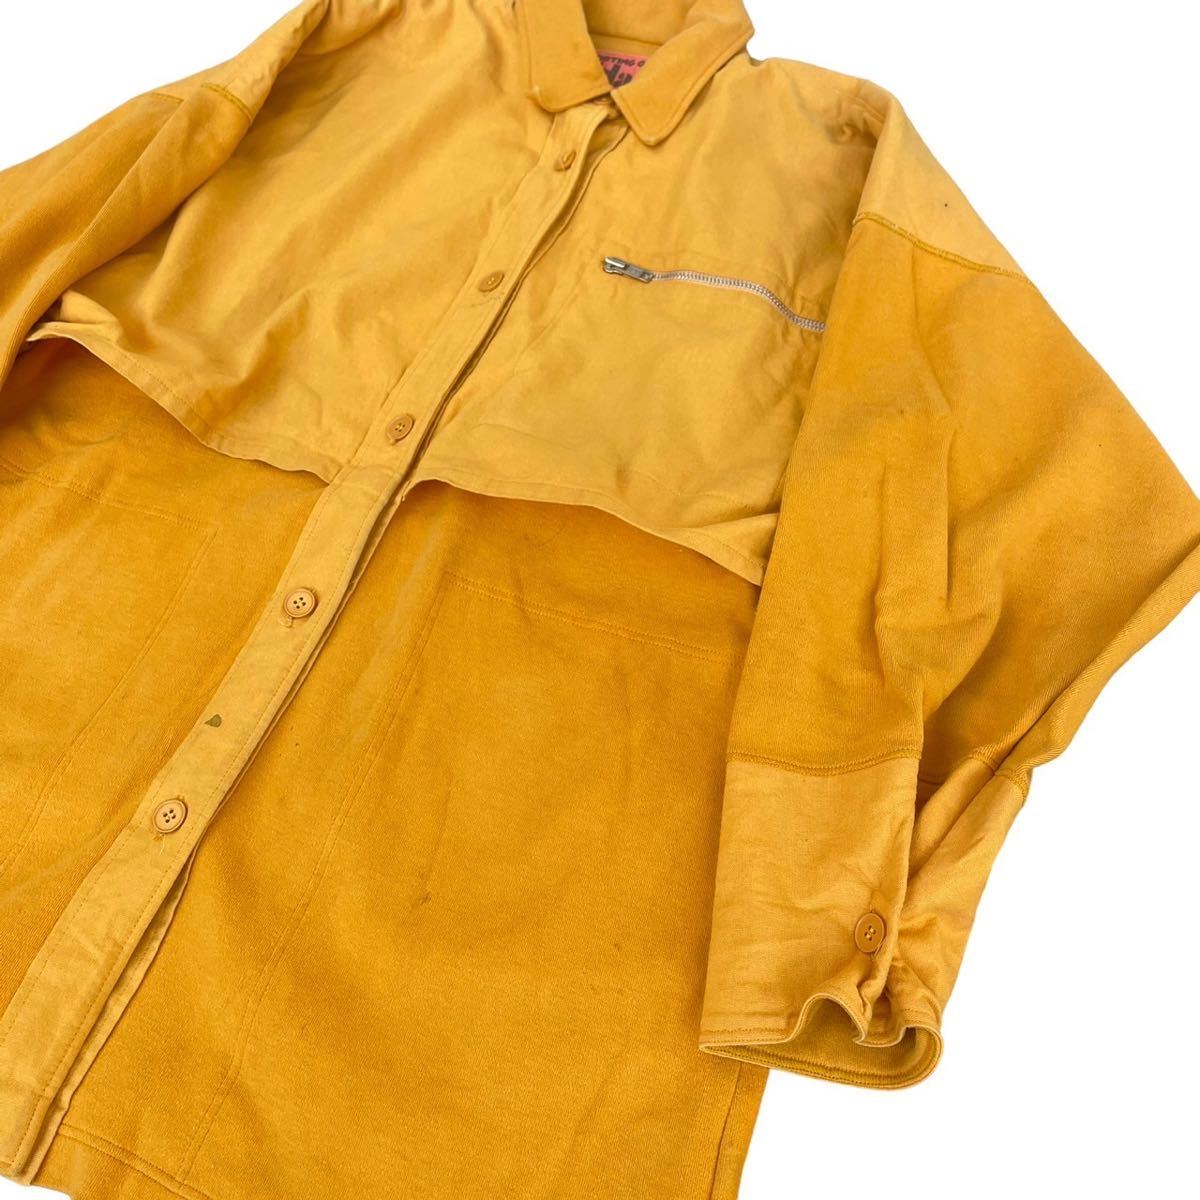 初期 Hai Sporting Gear ISSEY MIYAKE docking coat jacket ハイスポーティングギア イッセイミヤケ コート Archive Ika イカ 80s Rare_画像2